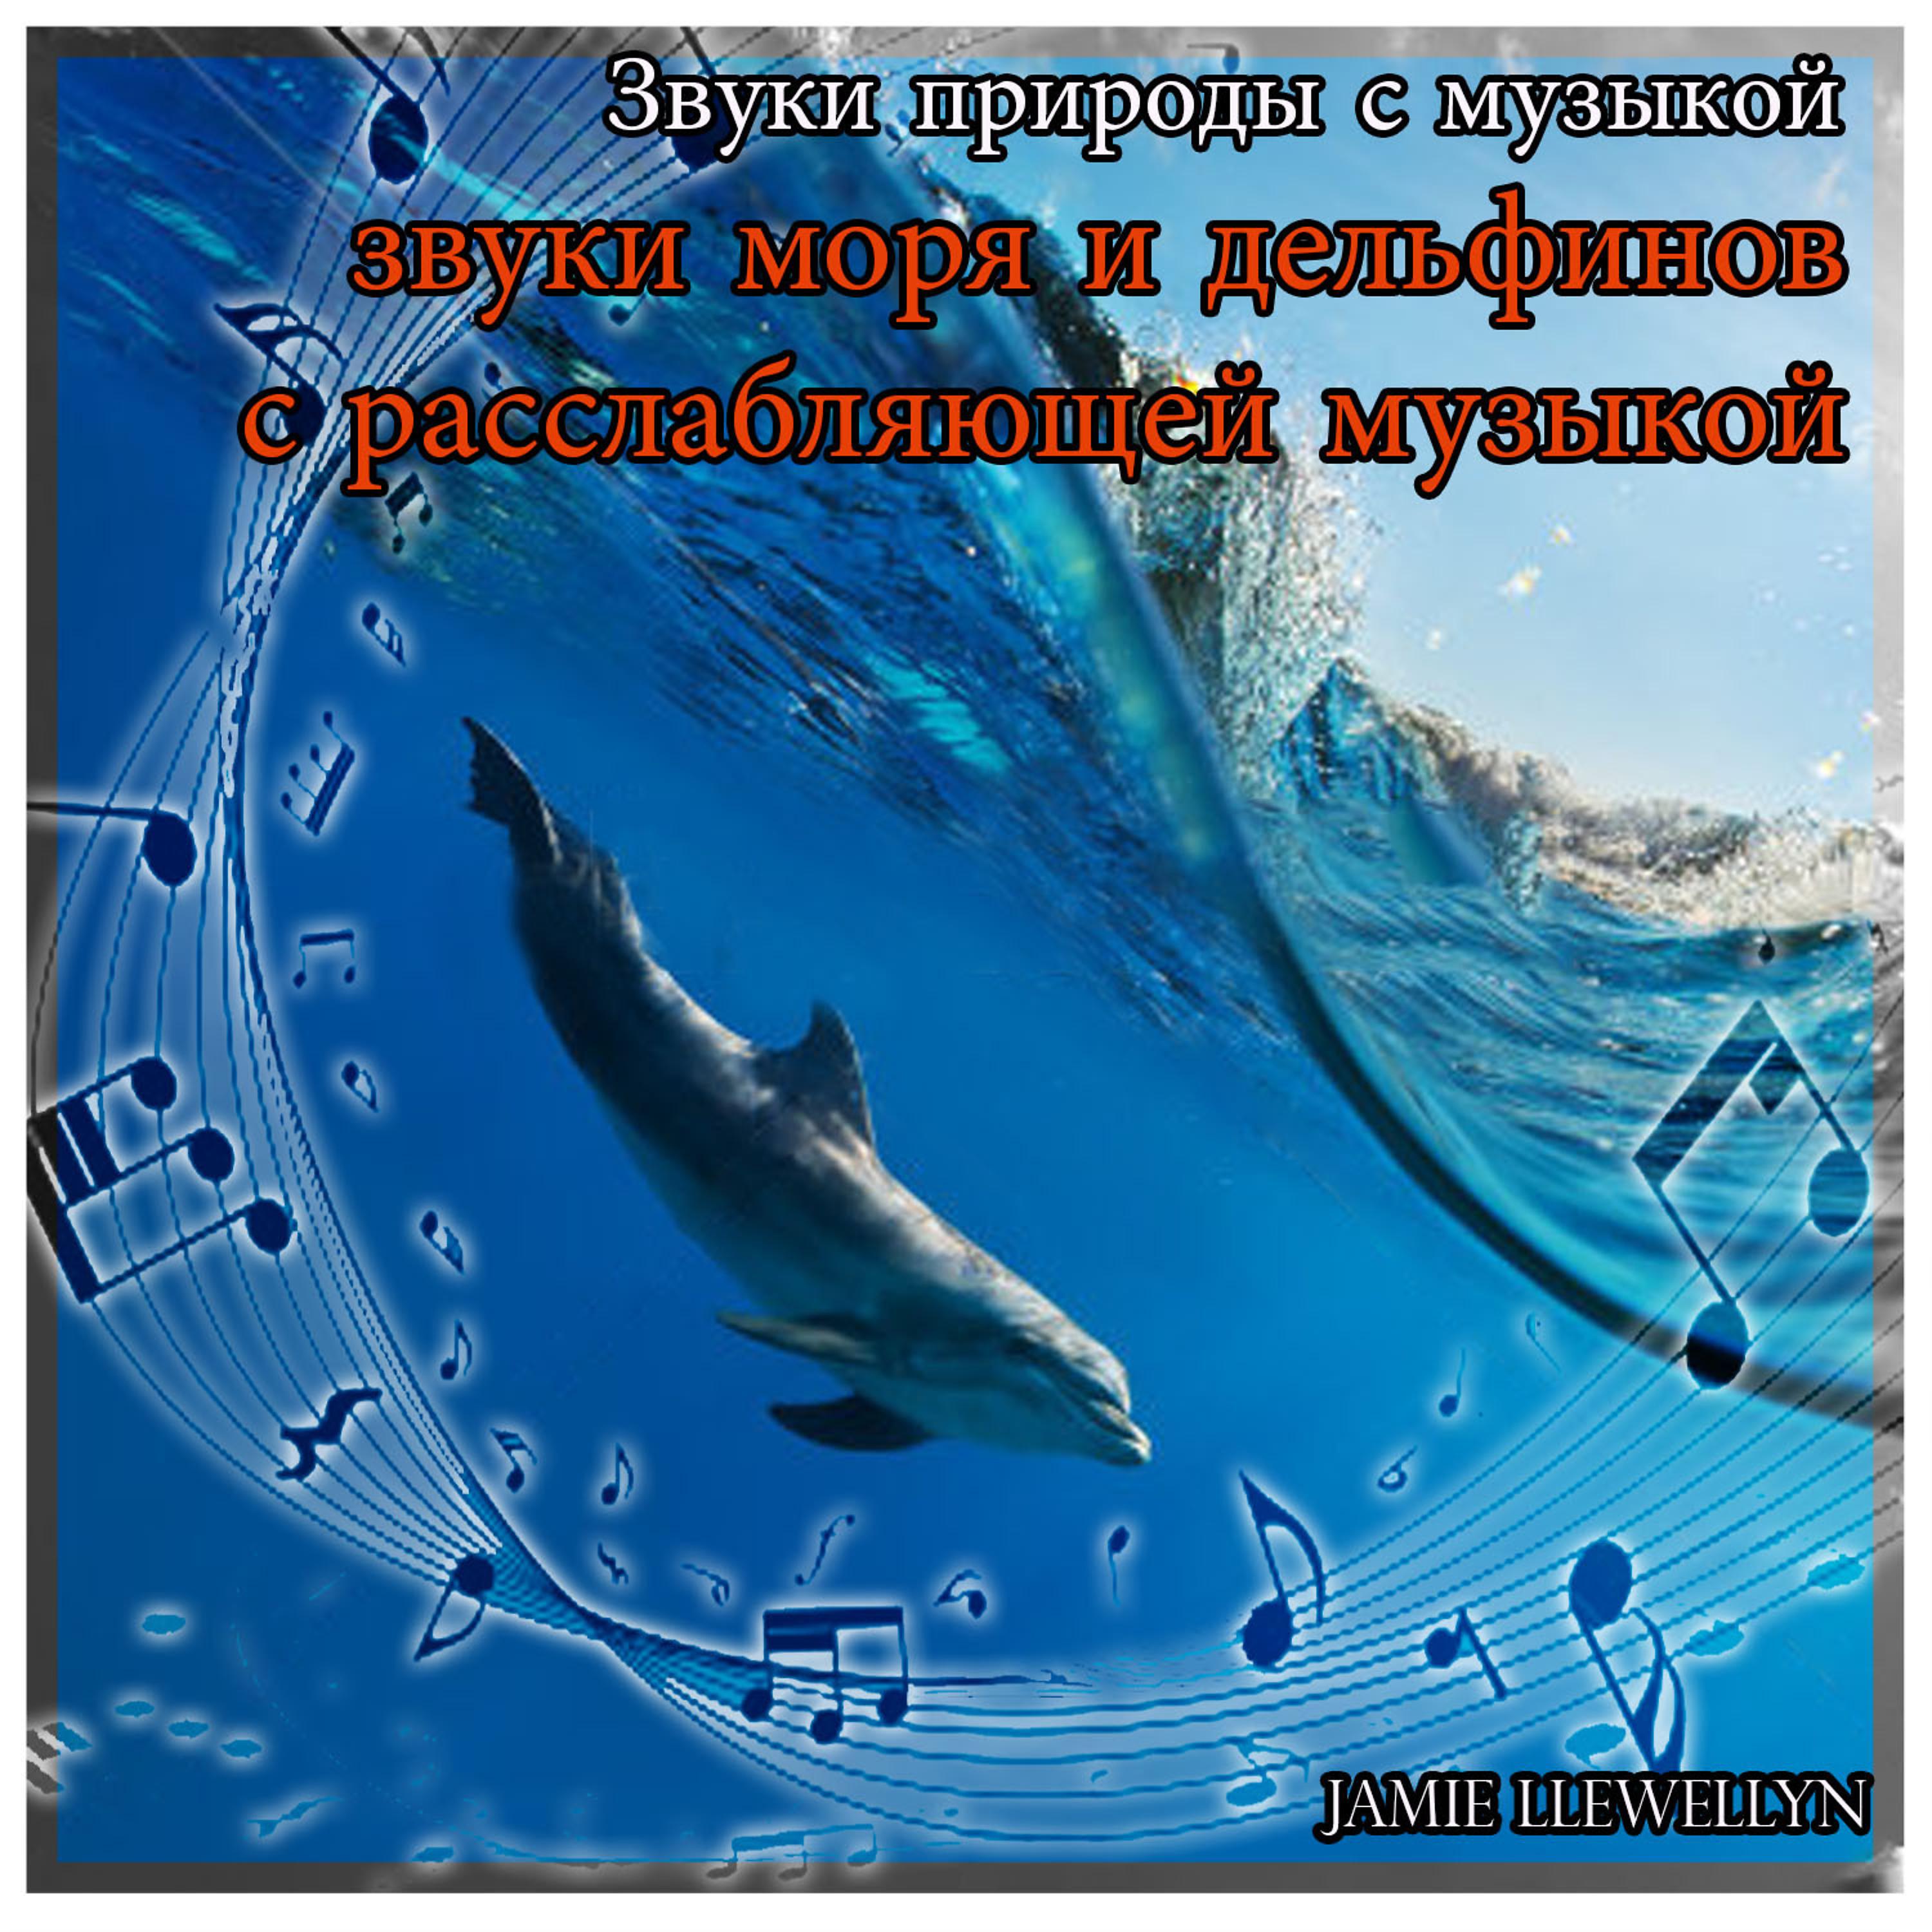 Постер альбома Звуки природы с музыкой:  звуки моря и дельфинов с расслабляющей музыкой